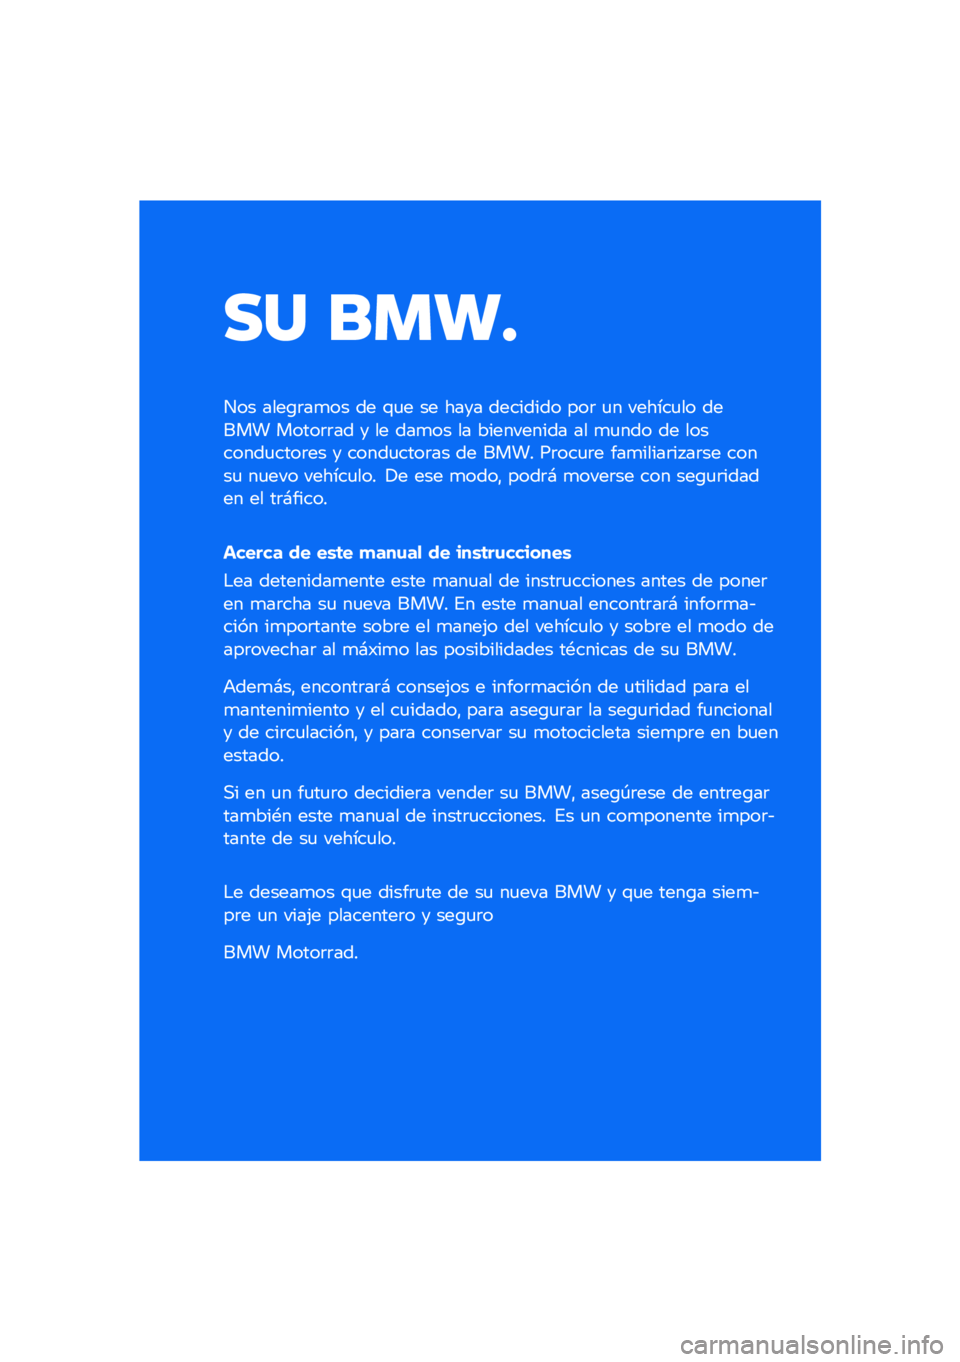 BMW MOTORRAD R NINE T SCRAMBLER 2021  Manual de instrucciones (in Spanish) �� ����
��� ����\b�	��
�� �� �\f�
� �� ���� �������� ���	 �
� ������
�� ����� �����	�	�� � �� ���
�� �� ���������� �� �
�
��